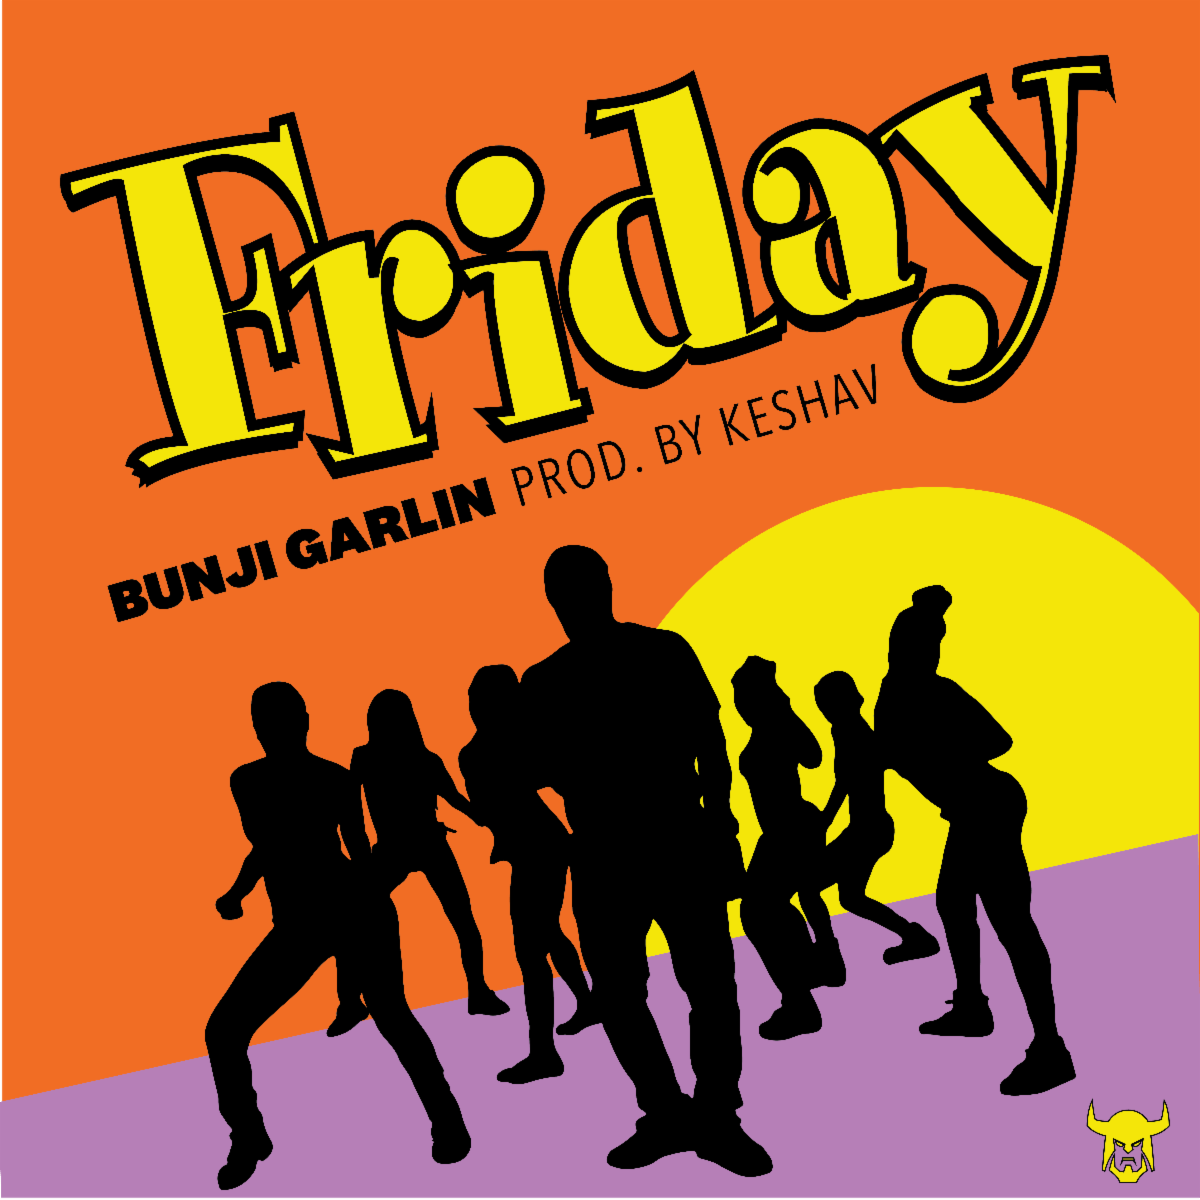 Bunji Garlin "Friday"